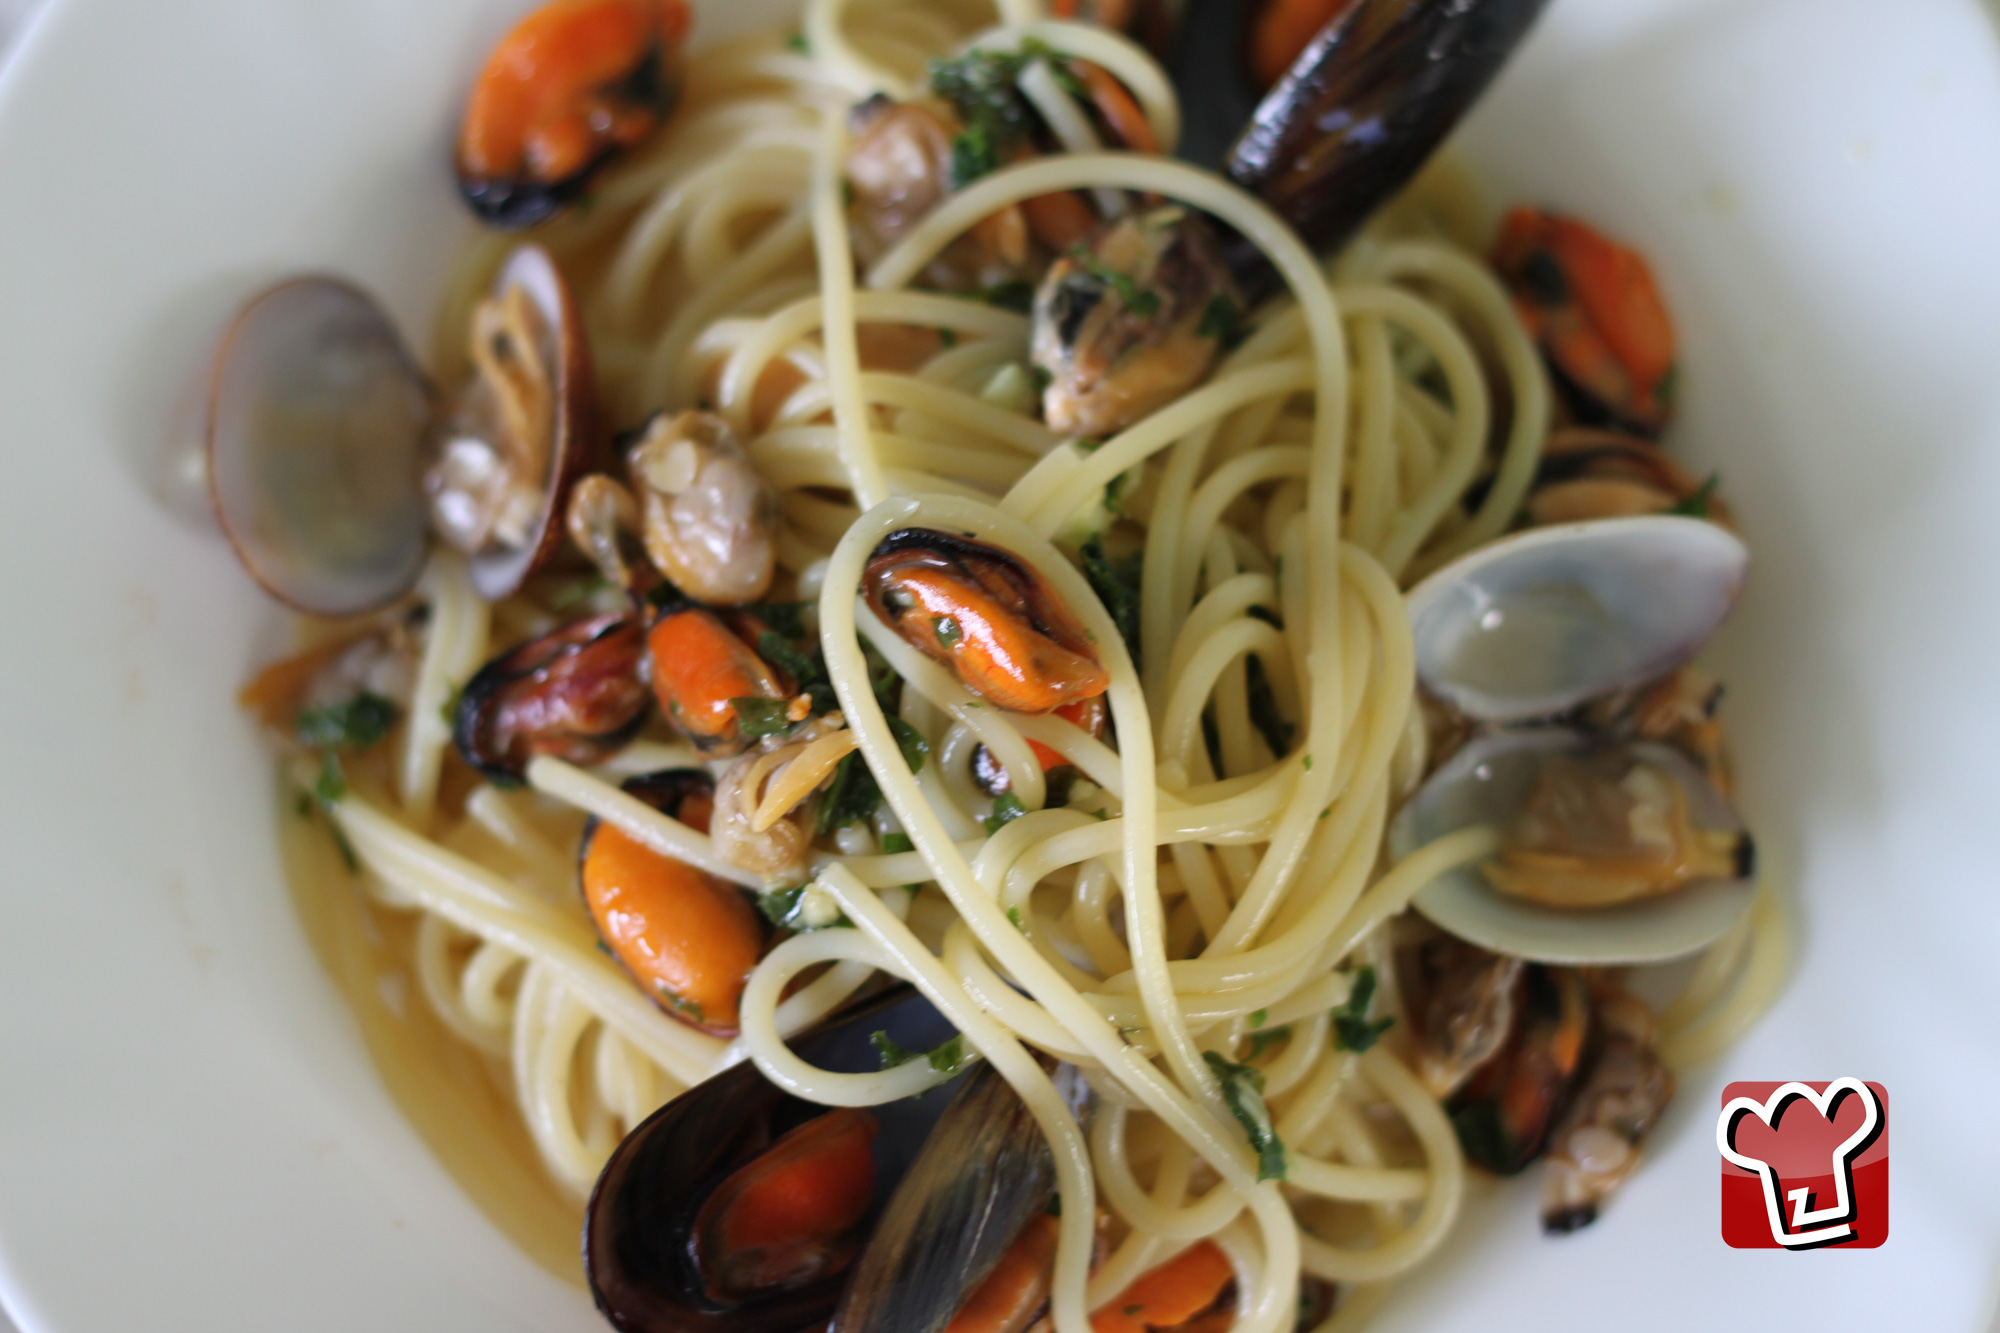 Spaghetti aux moules et aux palourdes est une Plats principaux à base